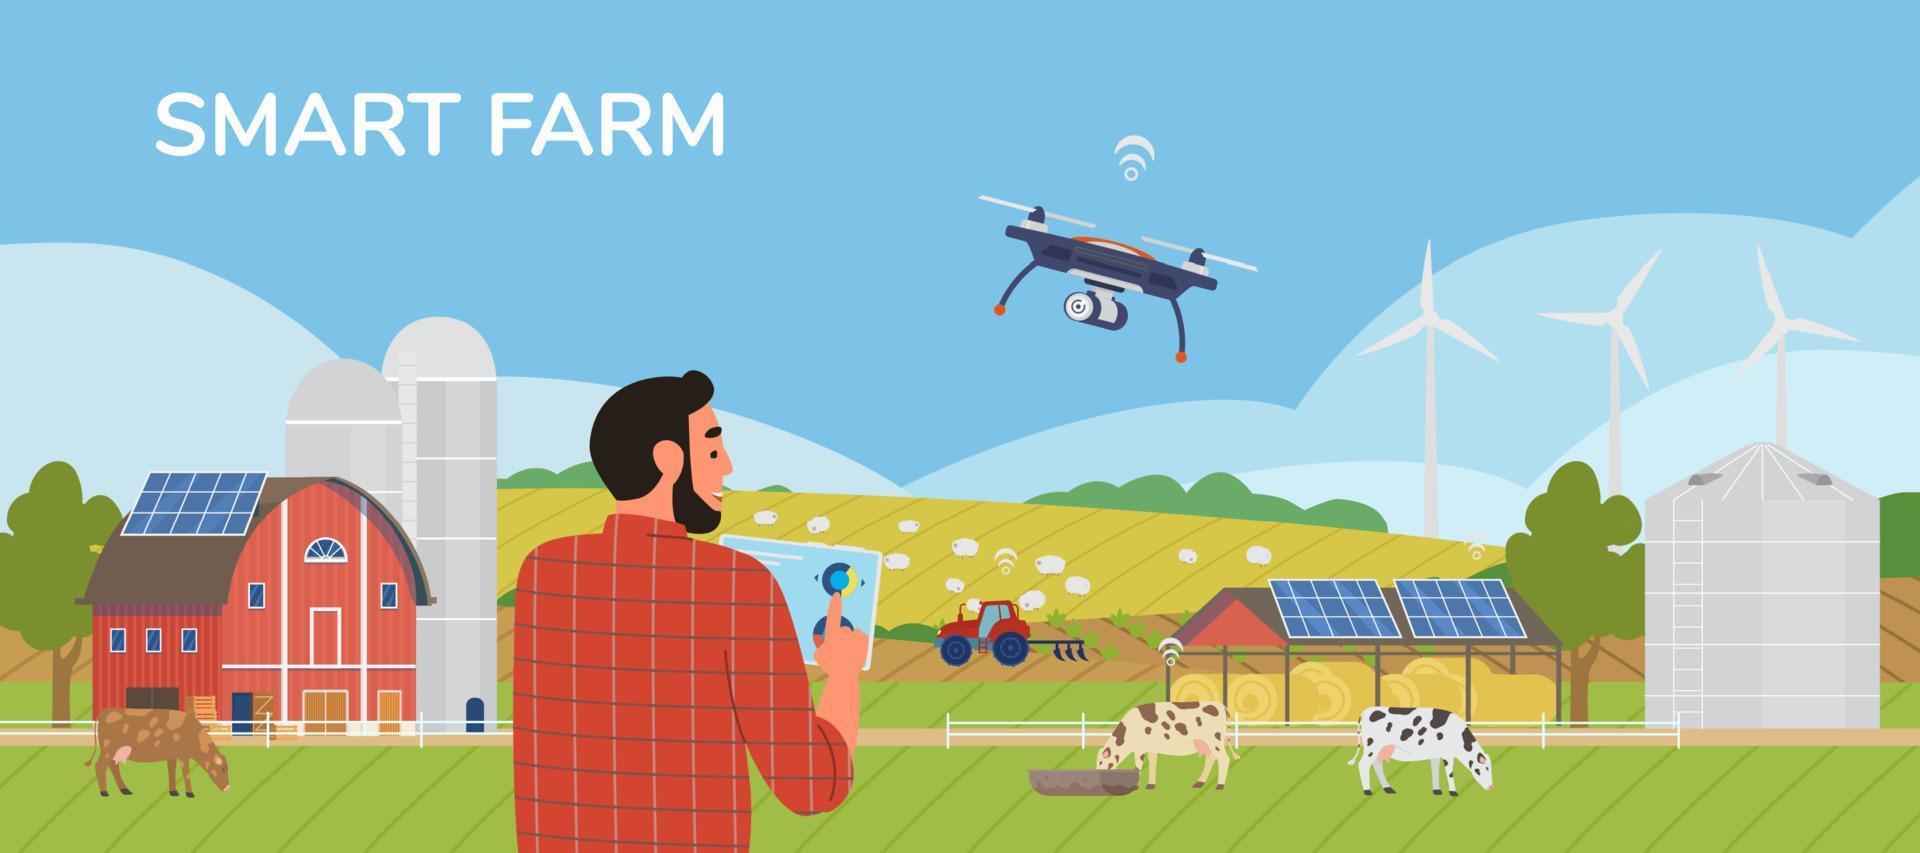 bannière de vecteur horizontal de ferme intelligente. agriculteur détenant une tablette gérant une ferme avec une application mobile. paysage rural avec panneaux solaires, moulins à vent, drones, vaches, tracteur.